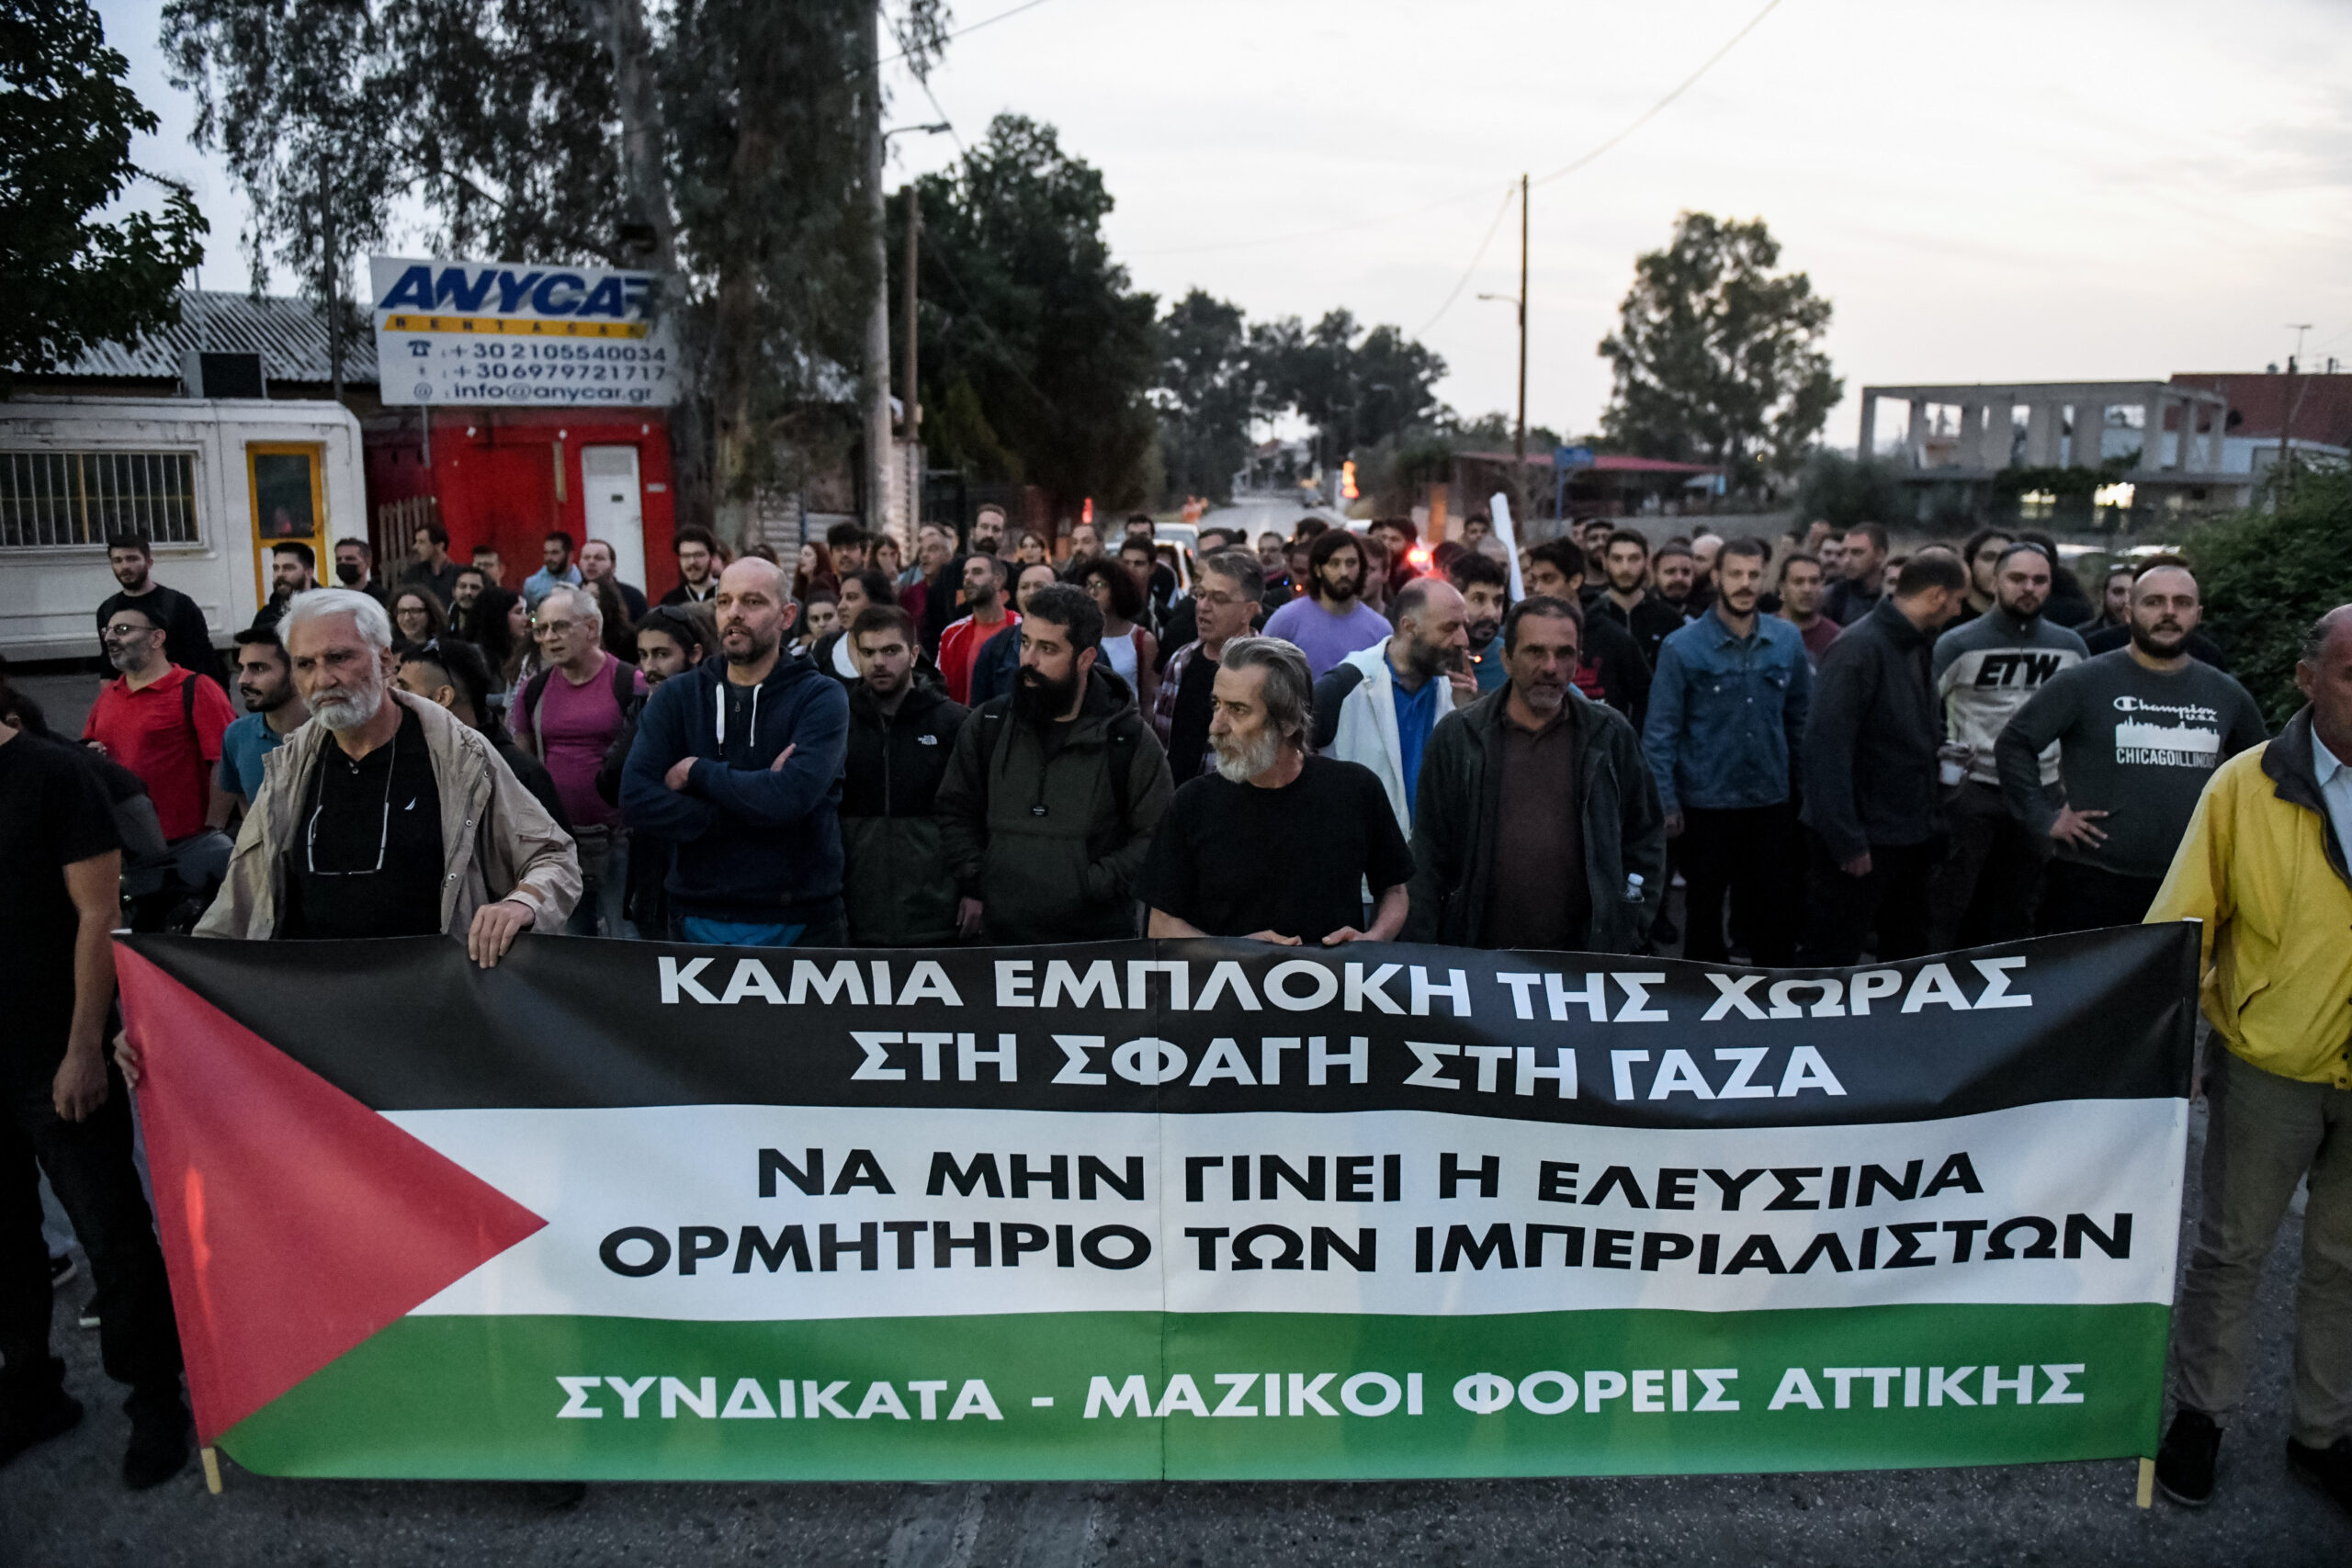 ΠAME: Συλλαλητήριο την Κυριακή 29 Οκτωβρίου στις 12.00 στο πάρκο Ελευθερίας και πορεία στην πρεσβεία του Ισραήλ